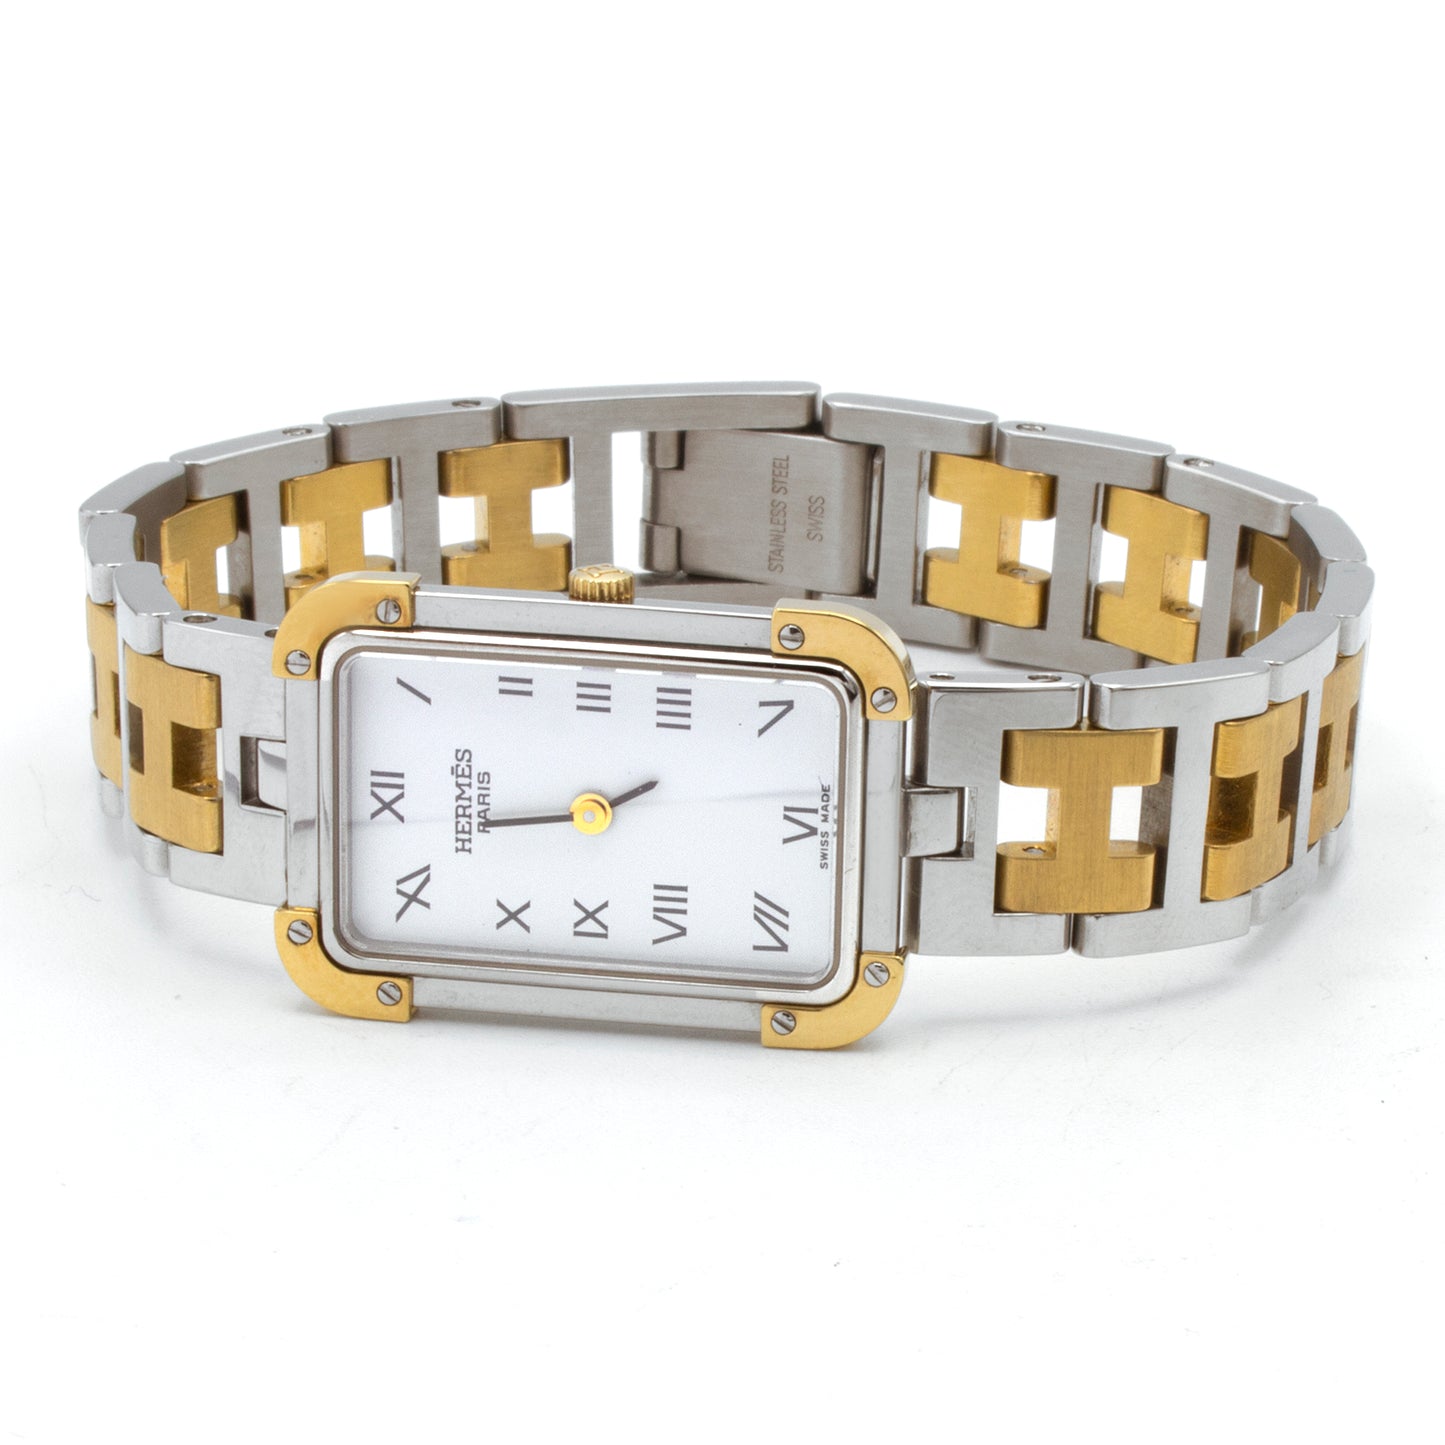 Hermès Croisière (26x18) watch